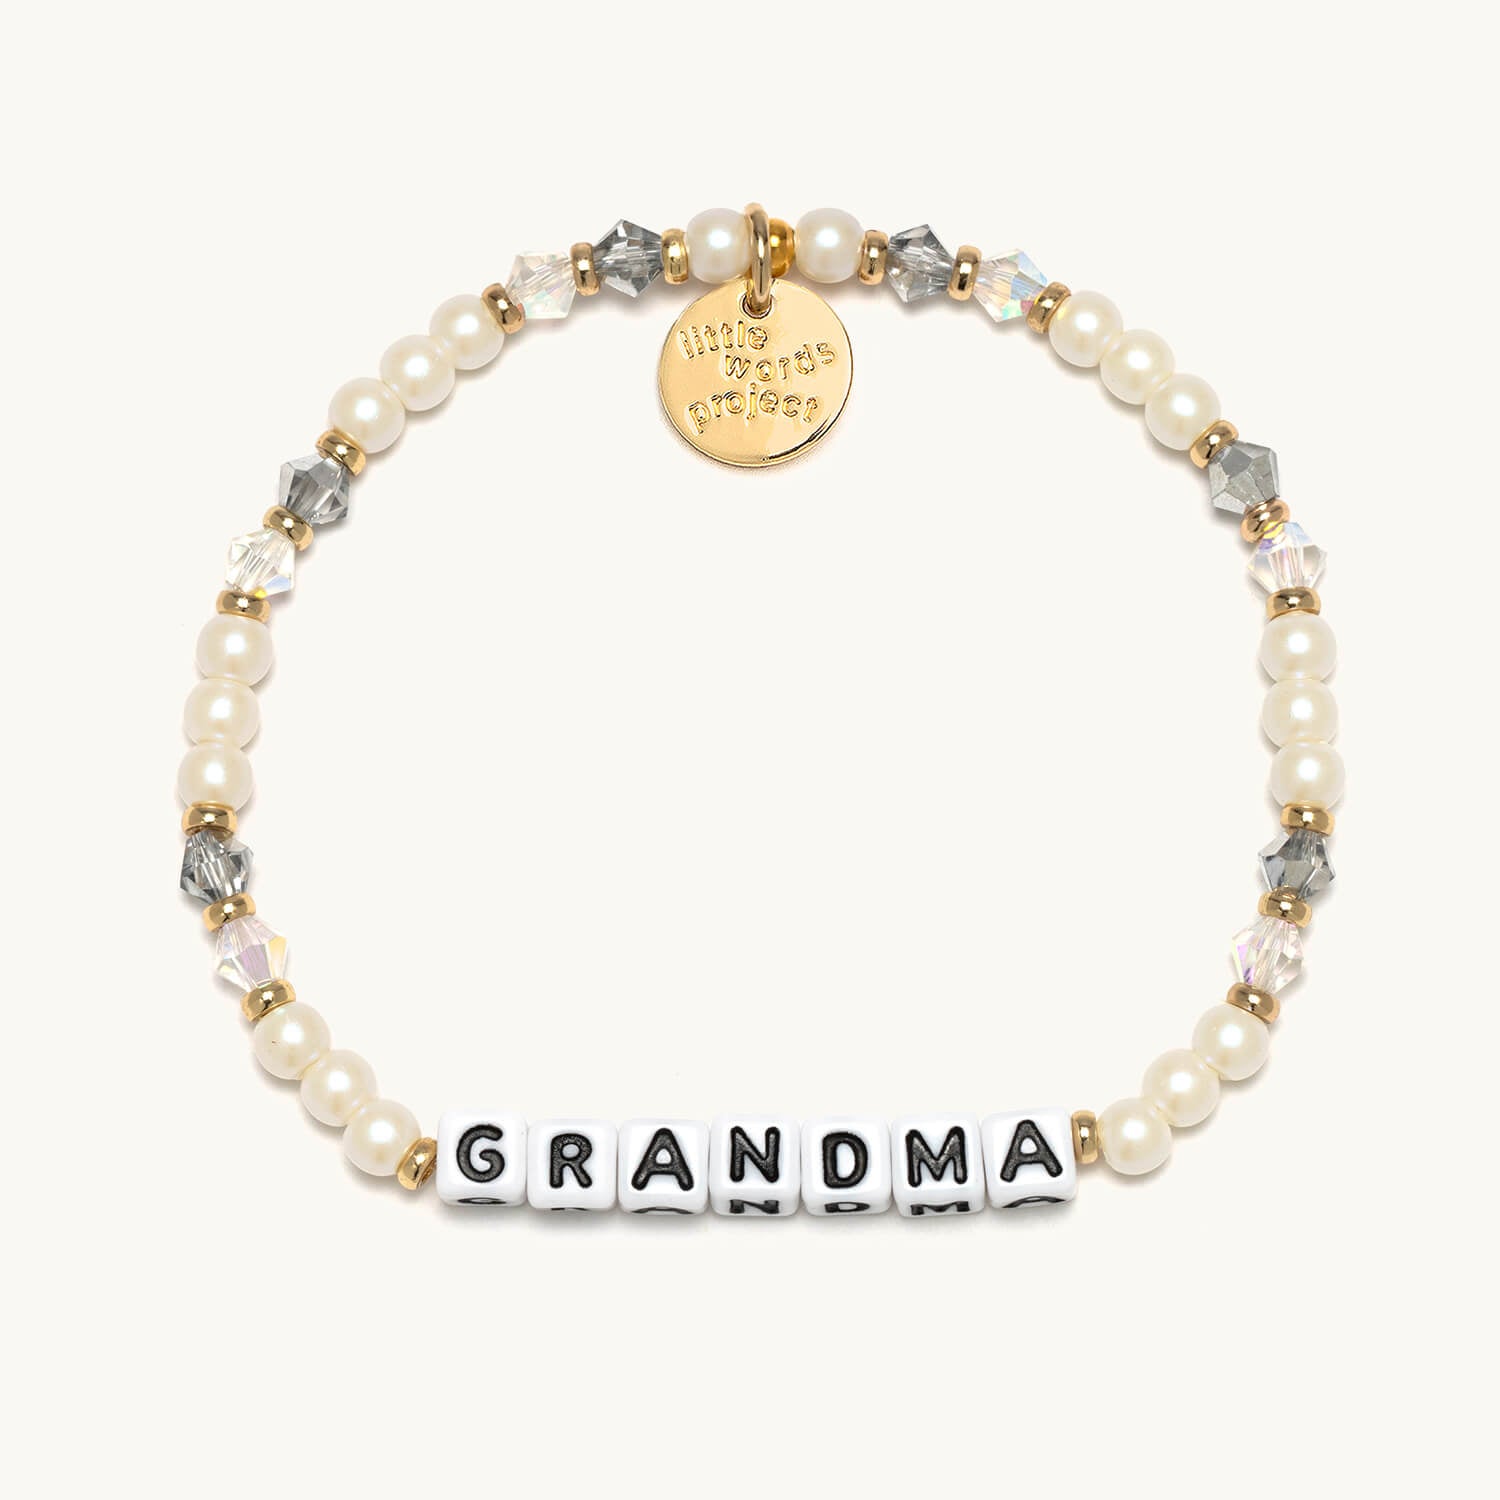 Grandma- Little Words Project Bracelet